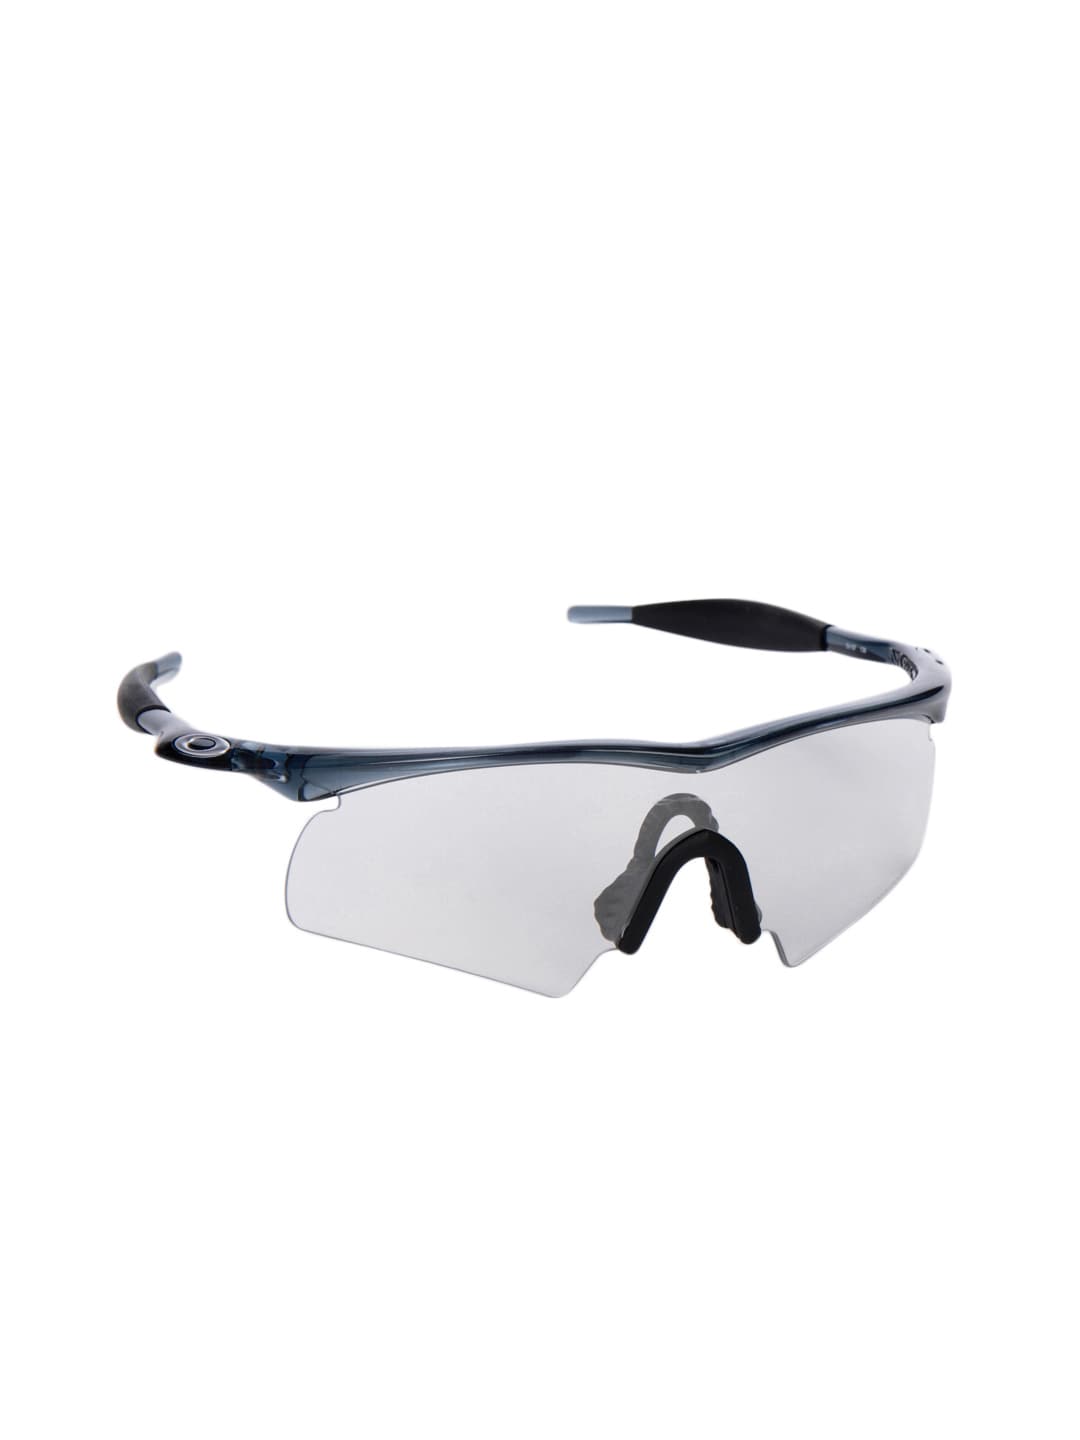 Oakley Men Translucent Grey Frame Driving Goggles